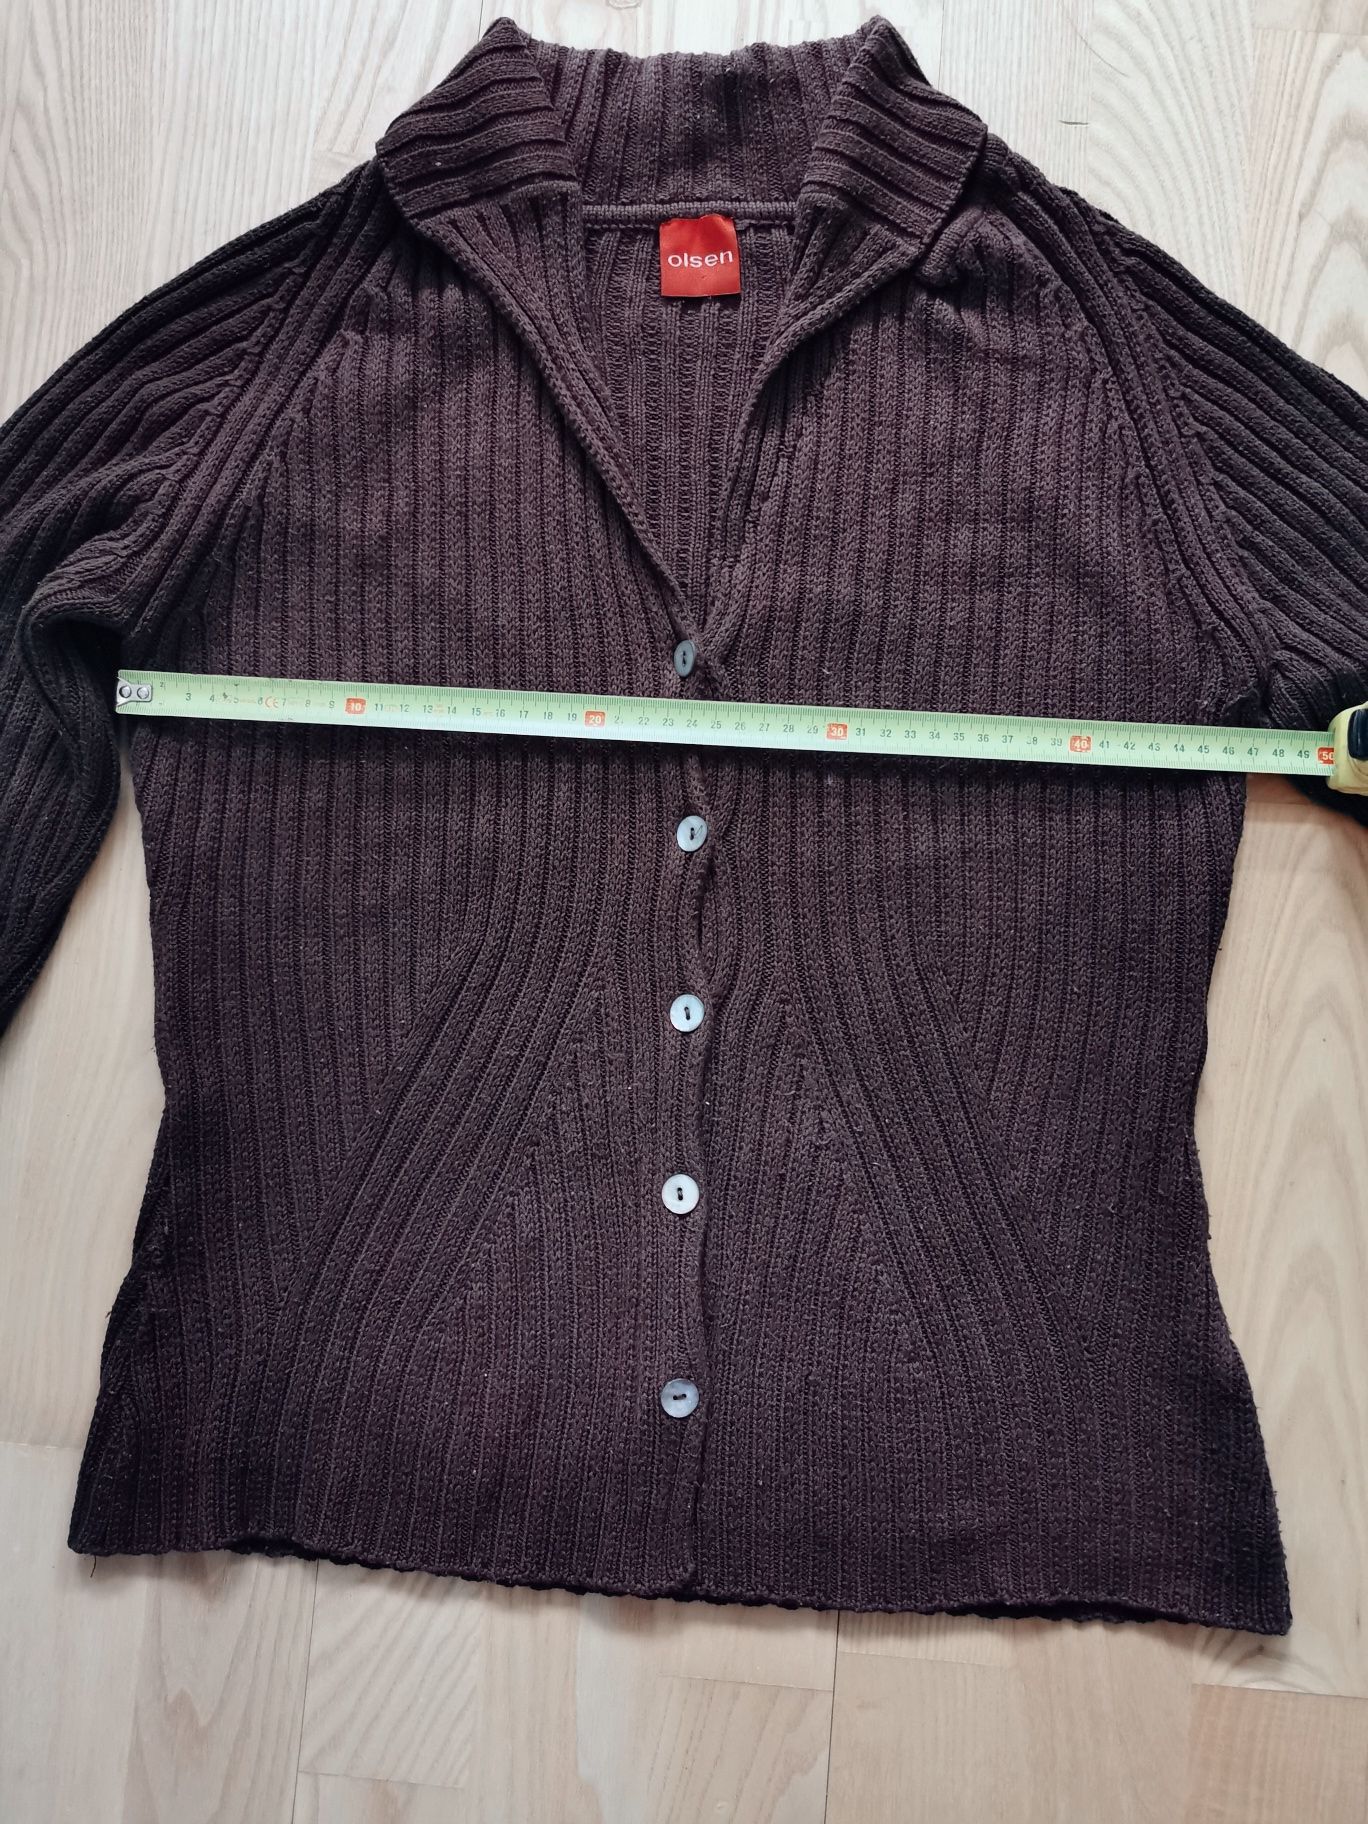 Damski sweter OLSEN, rozmiar 40 DE, bawełna/Acryl, brązowy, kolor kawy